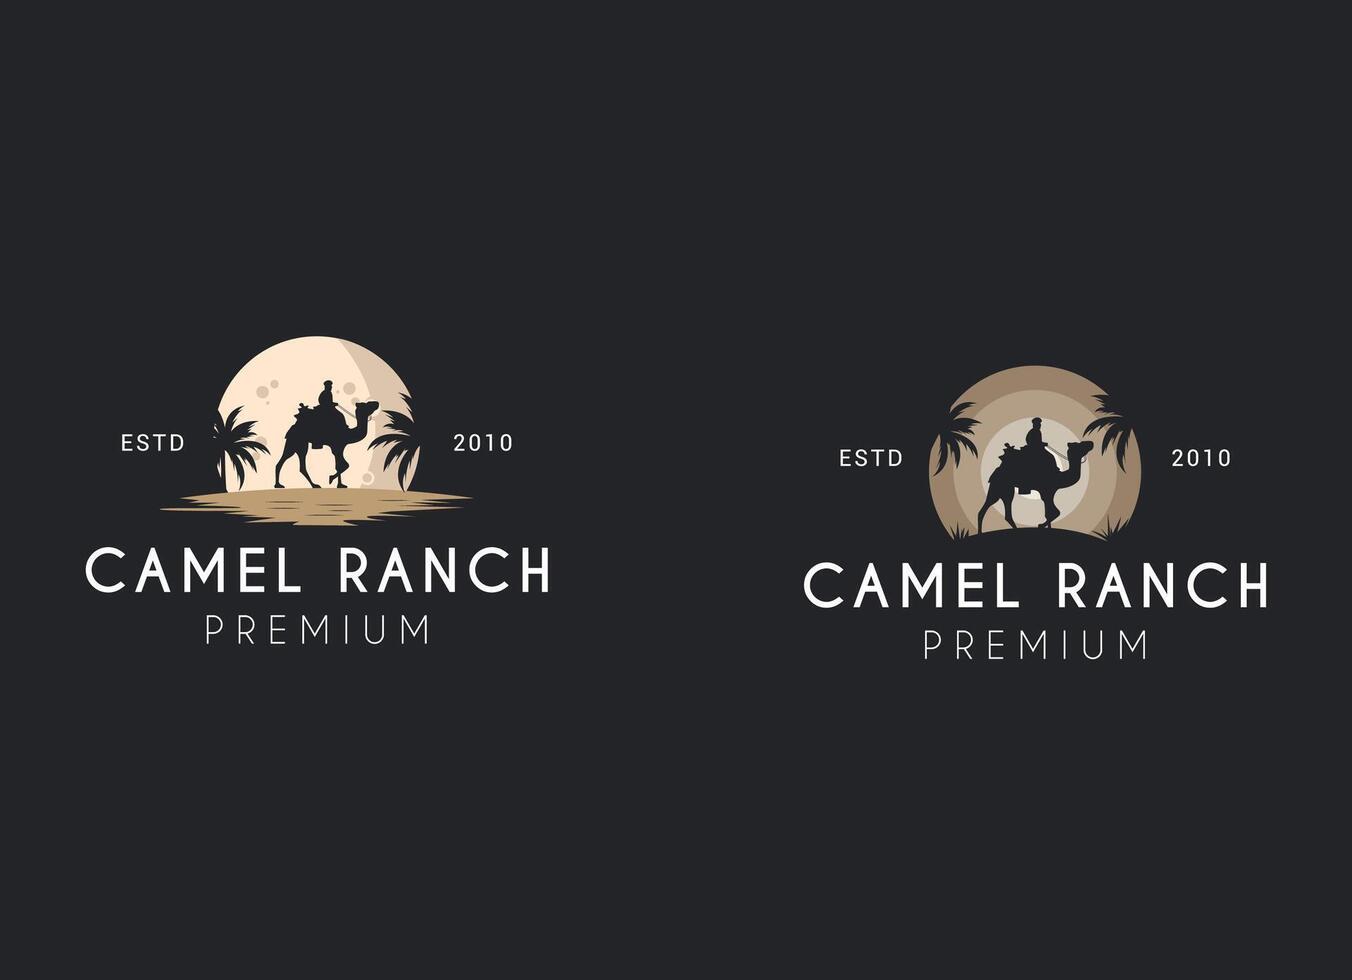 desert camel silhouette logo design. Camel ranch logo design. vector